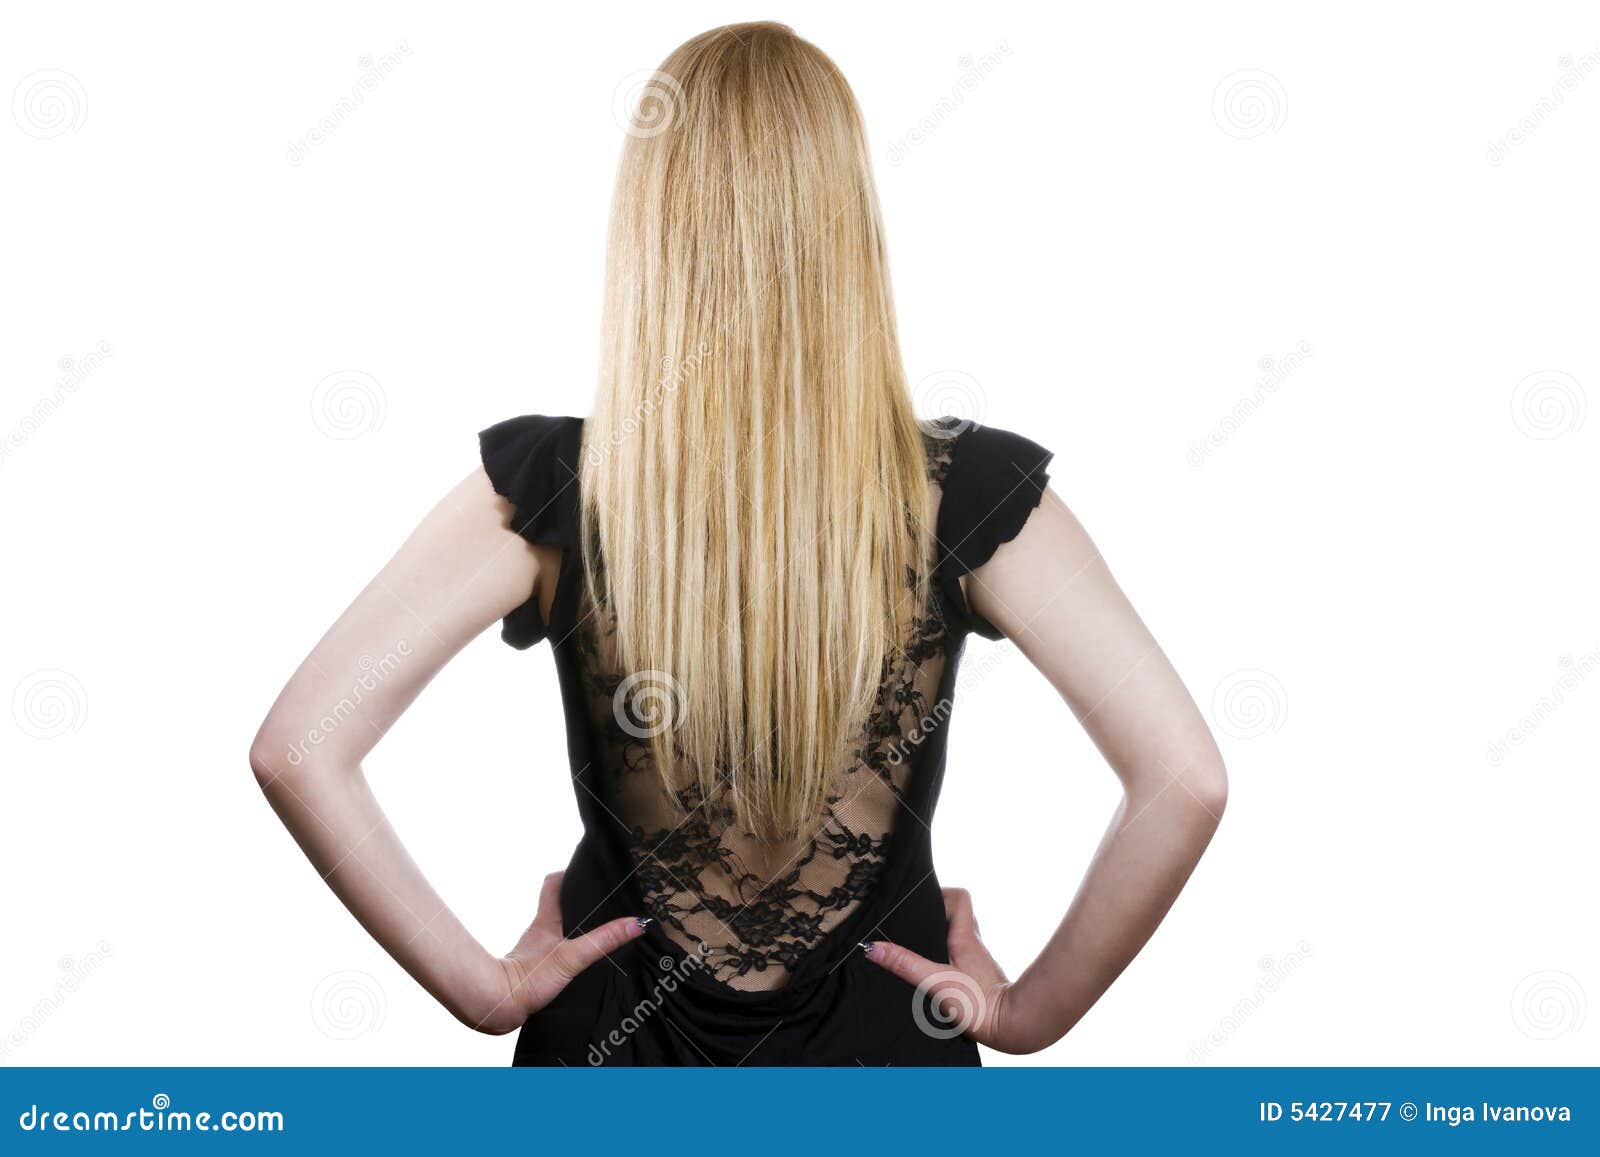 geluid onbetaald Bijdrage Mooi lang blond haar stock afbeelding. Image of kleding - 5427477